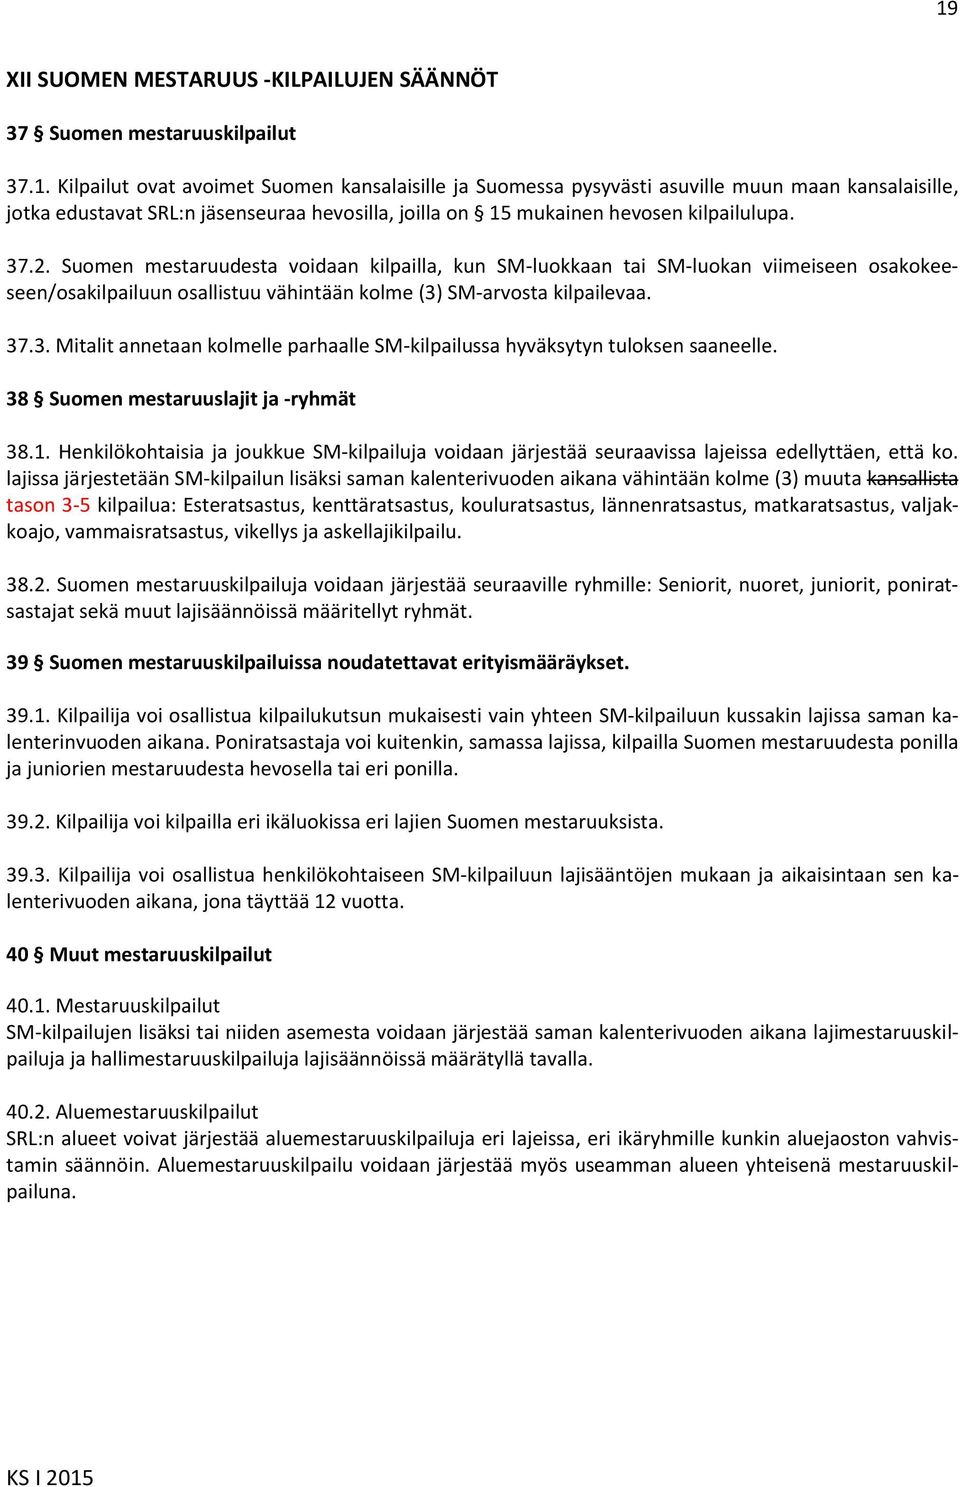 38 Suomen mestaruuslajit ja -ryhmät 38.1. Henkilökohtaisia ja joukkue SM-kilpailuja voidaan järjestää seuraavissa lajeissa edellyttäen, että ko.